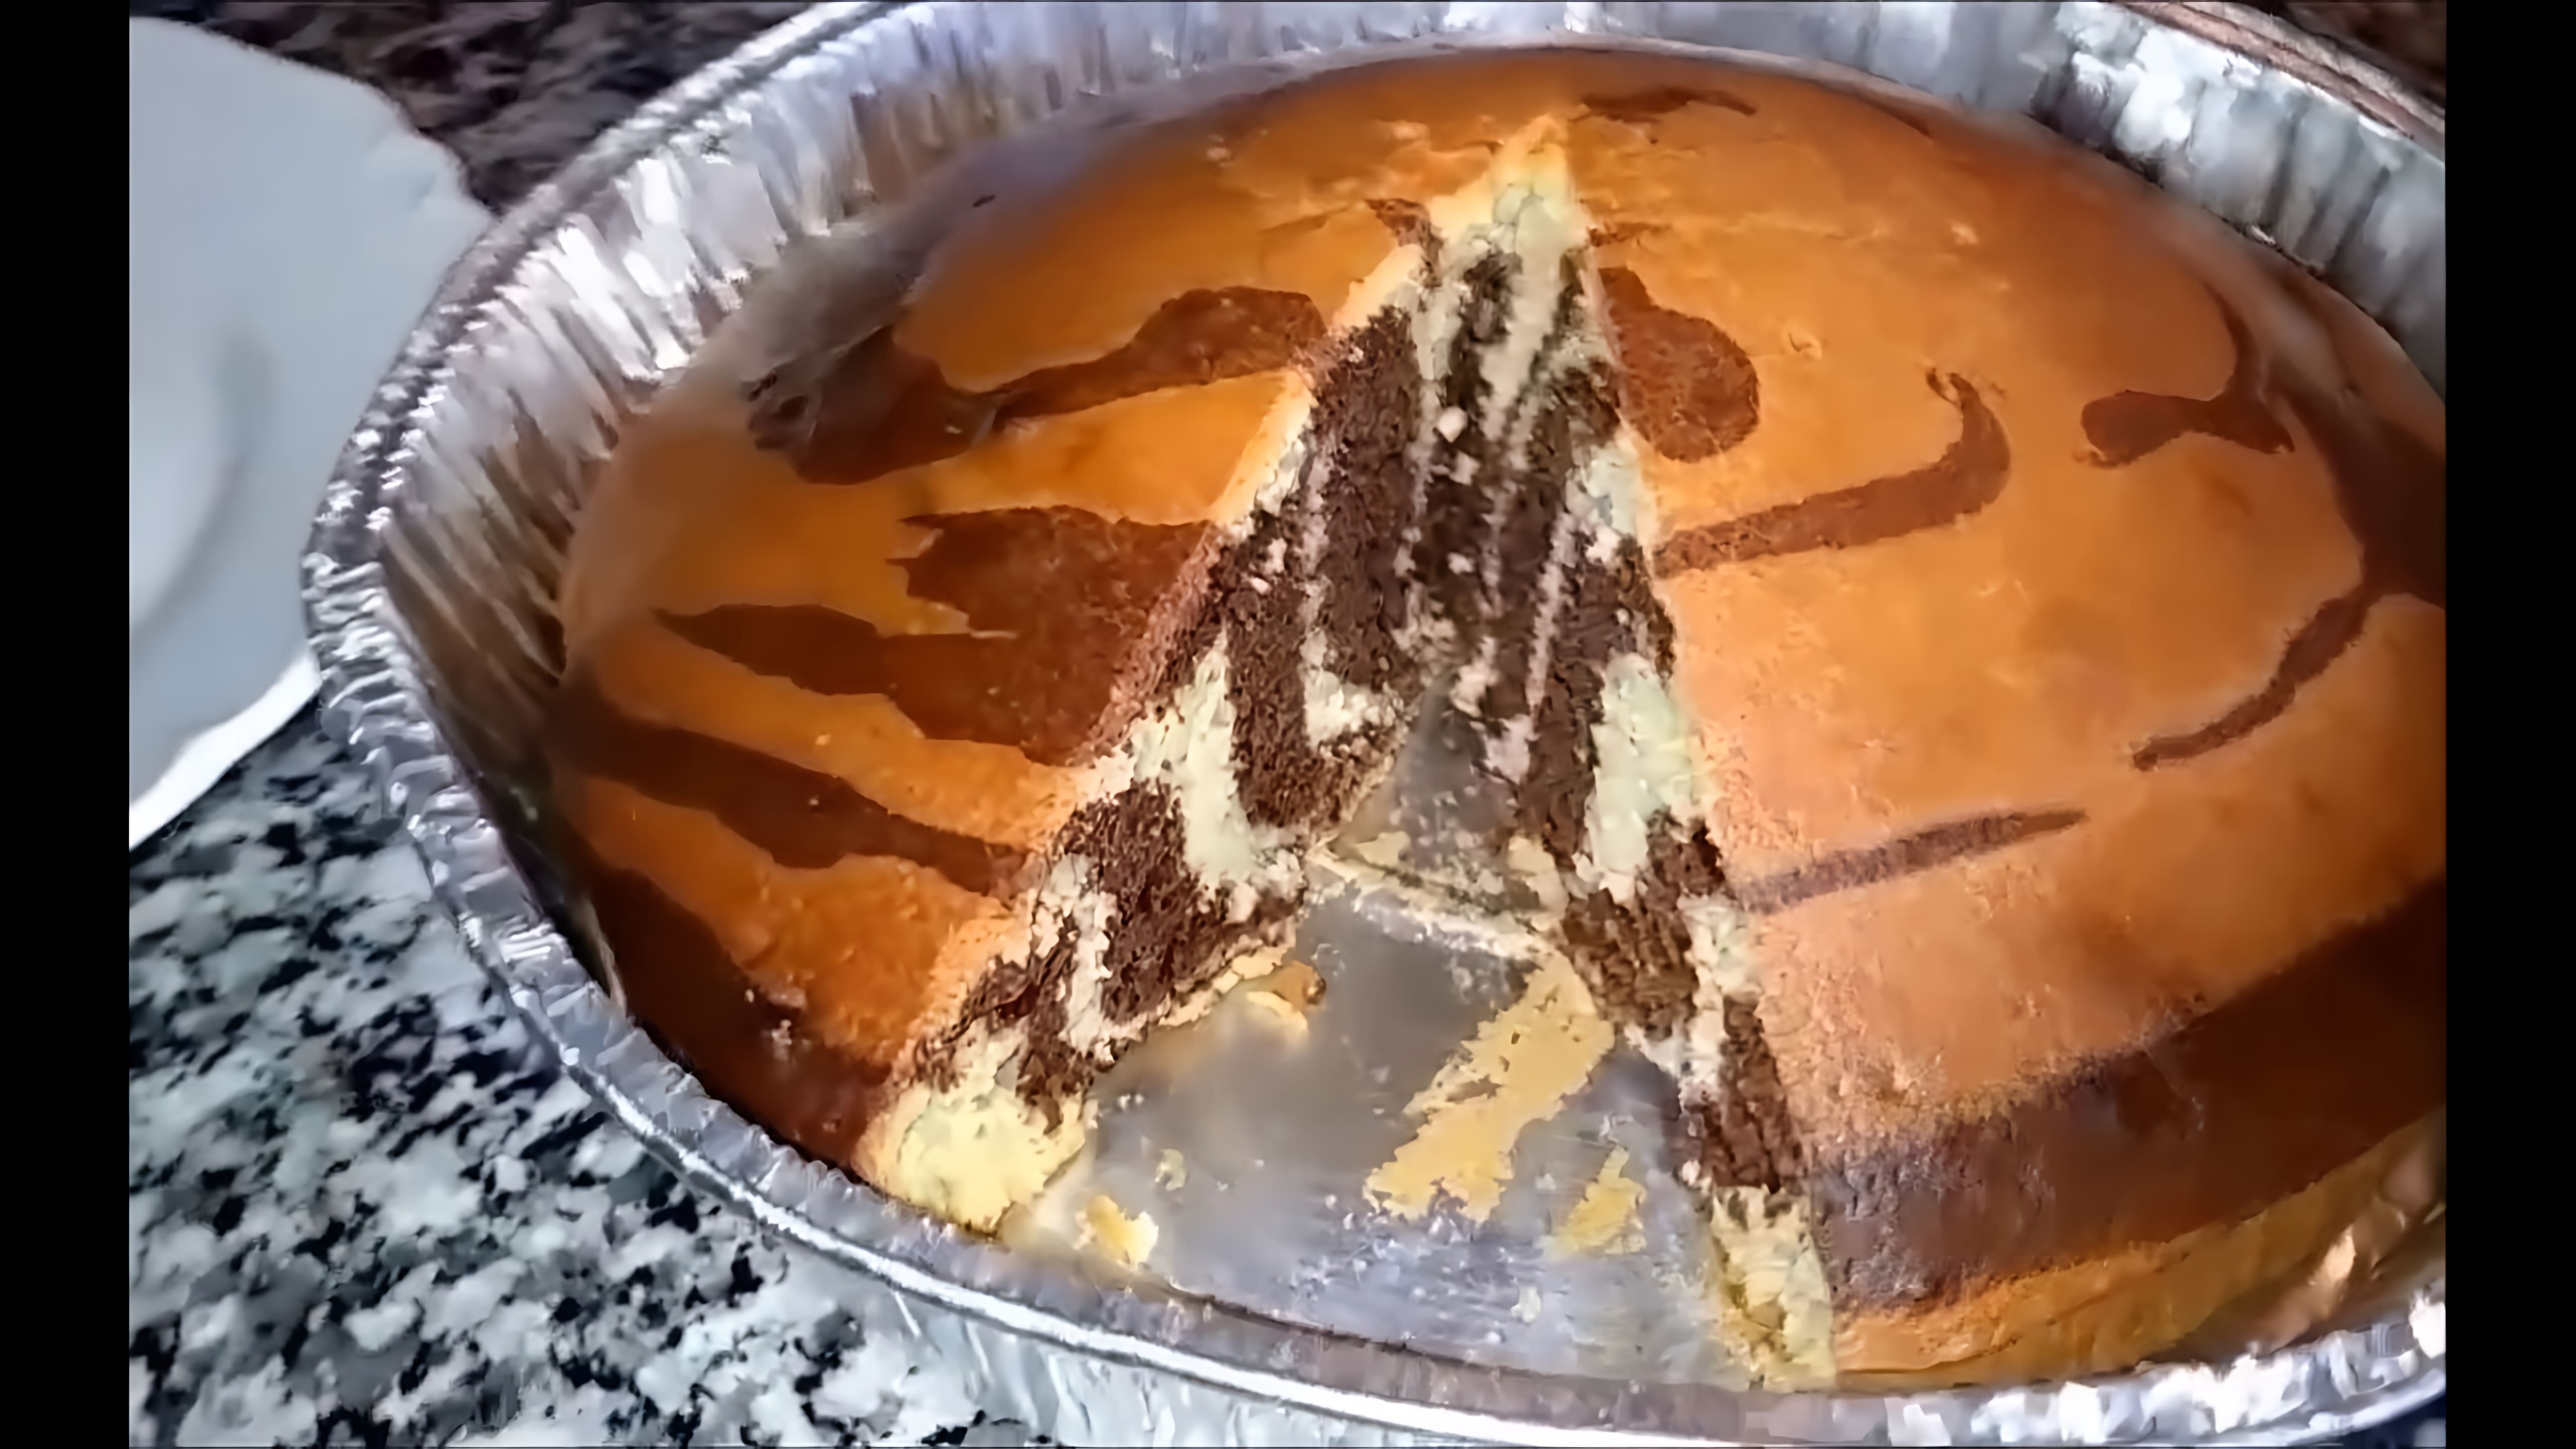 В этом видео демонстрируется рецепт приготовления пирога "Зебра", который также называют "Тигр"